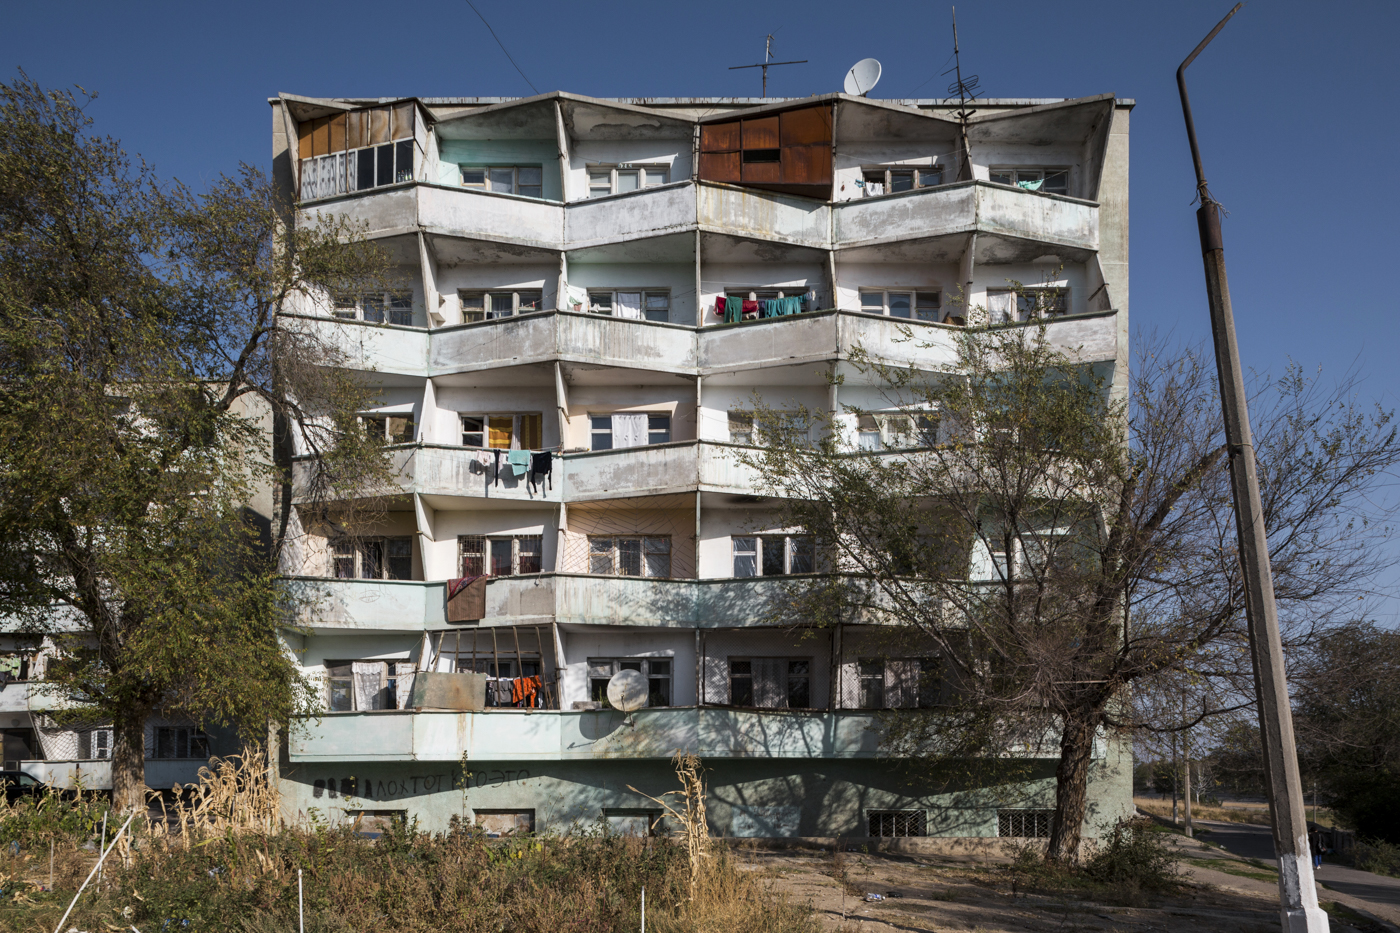 Residential building (1970s). Chkalovsk, Tajikistan. Photo: Stefano Perego